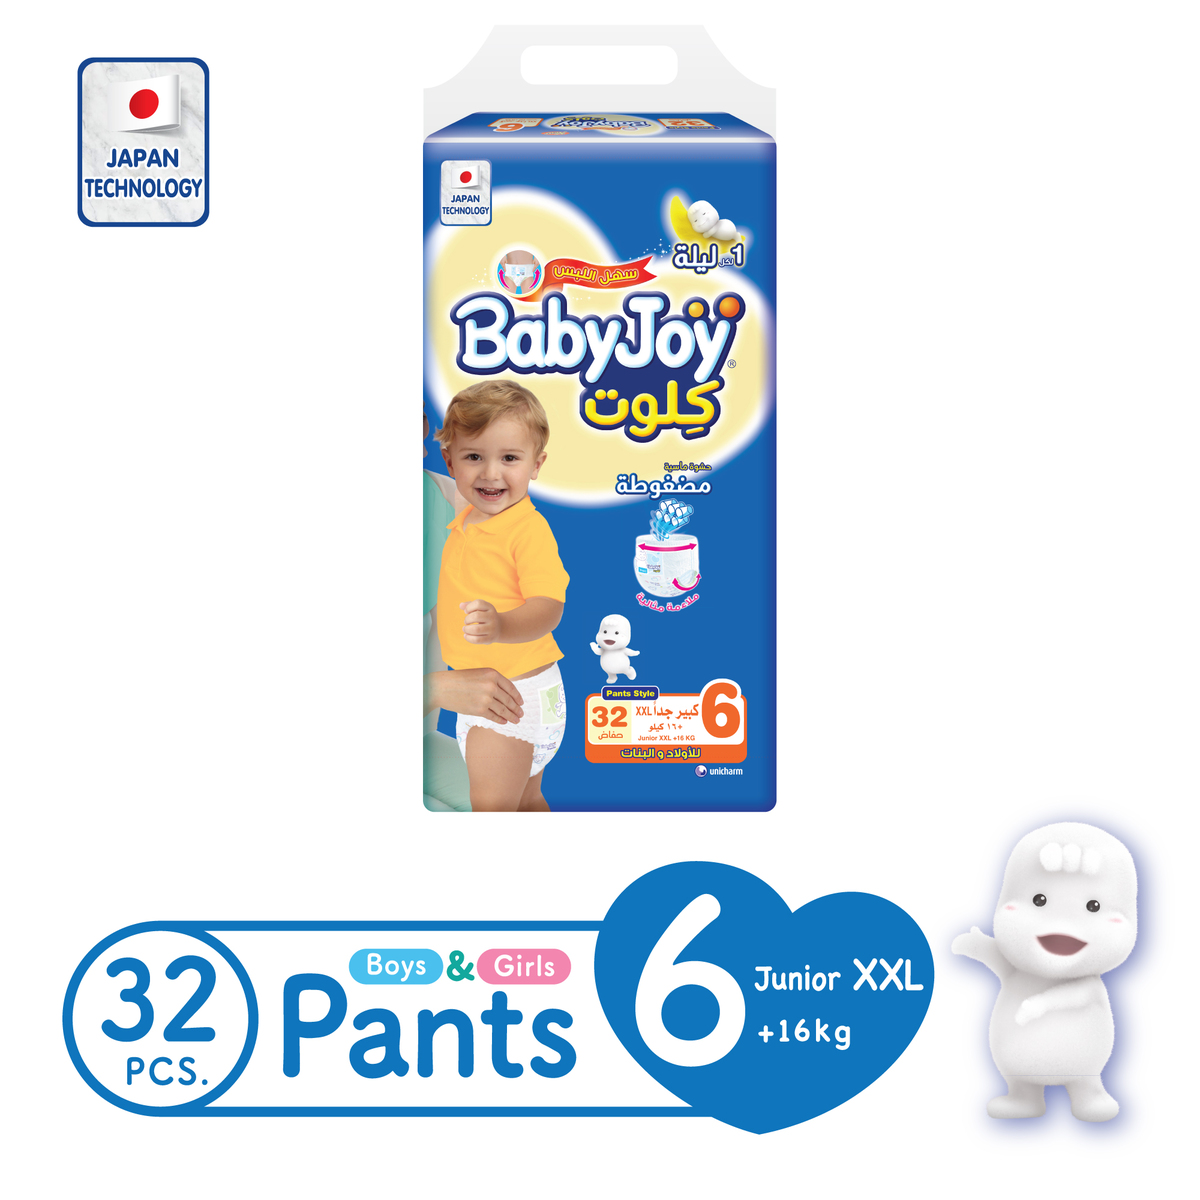 Buy BabyJoy Culotte Pants Diaper Size 6 XXL Jumbo Pack 16+kg 32 Count Online at Best Price | Baby Nappies | Lulu UAE in UAE